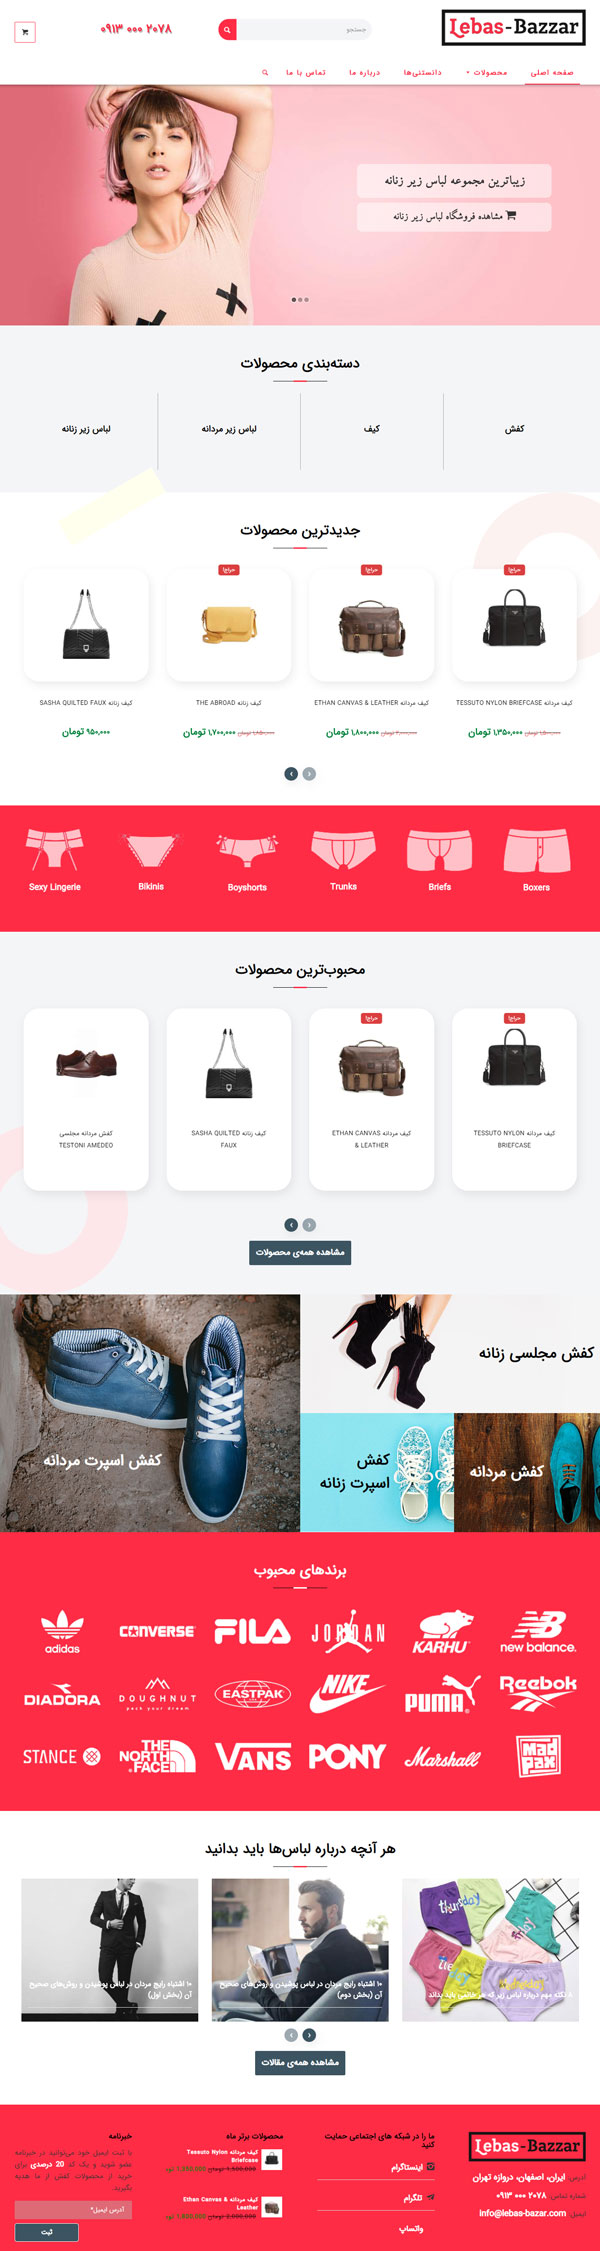 طراحی سایت شیکسانو | فروشگاه پوشاک و کیف و کفش